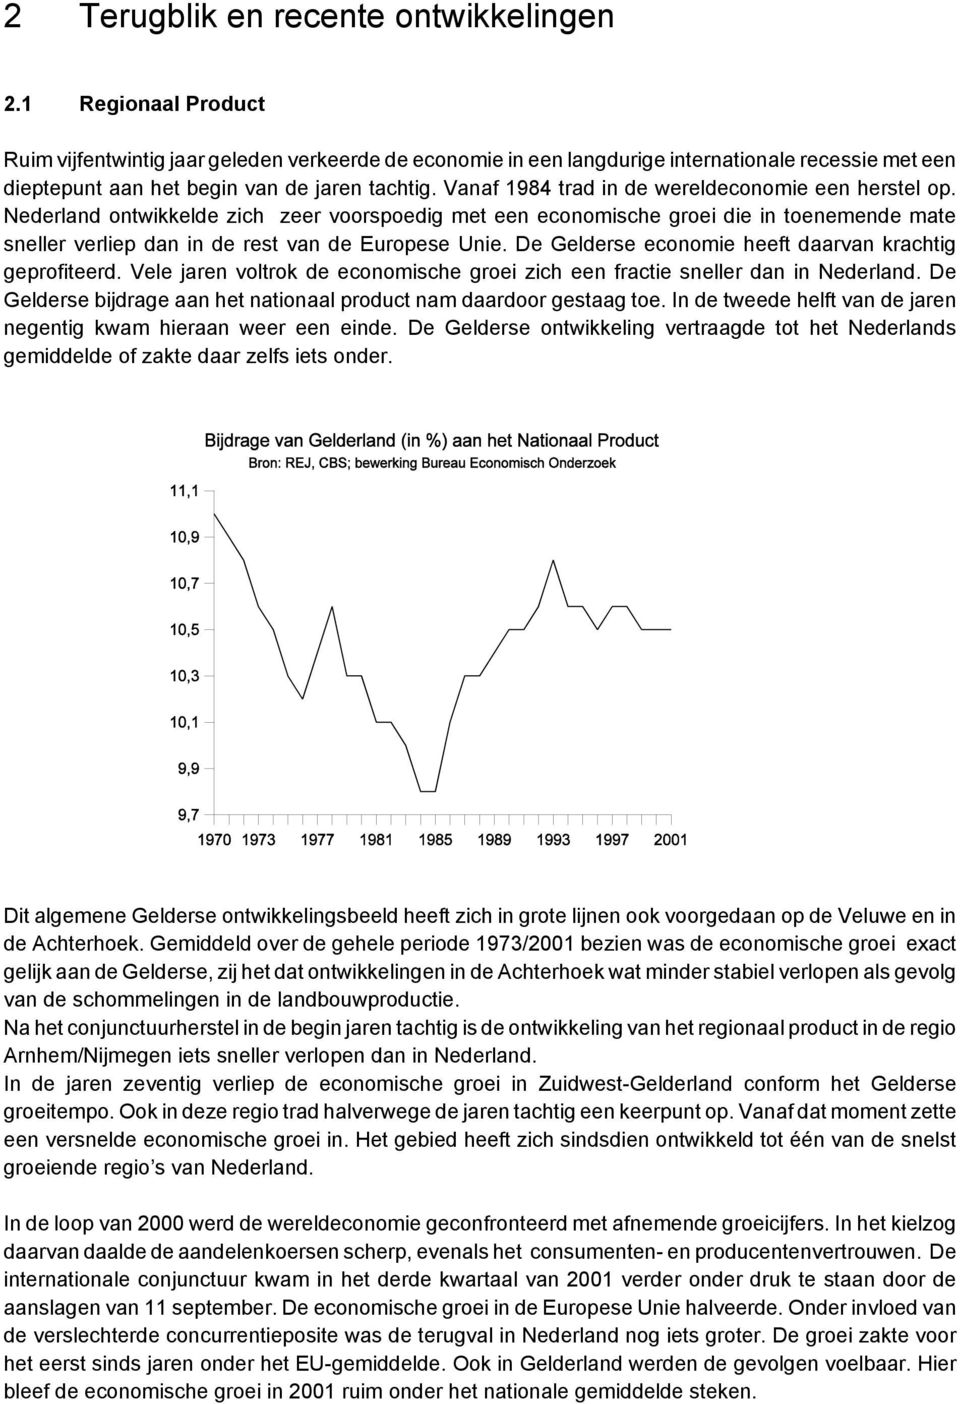 Vanaf 1984 trad in de wereldeconomie een herstel op. Nederland ontwikkelde zich zeer voorspoedig met een economische groei die in toenemende mate sneller verliep dan in de rest van de Europese Unie.